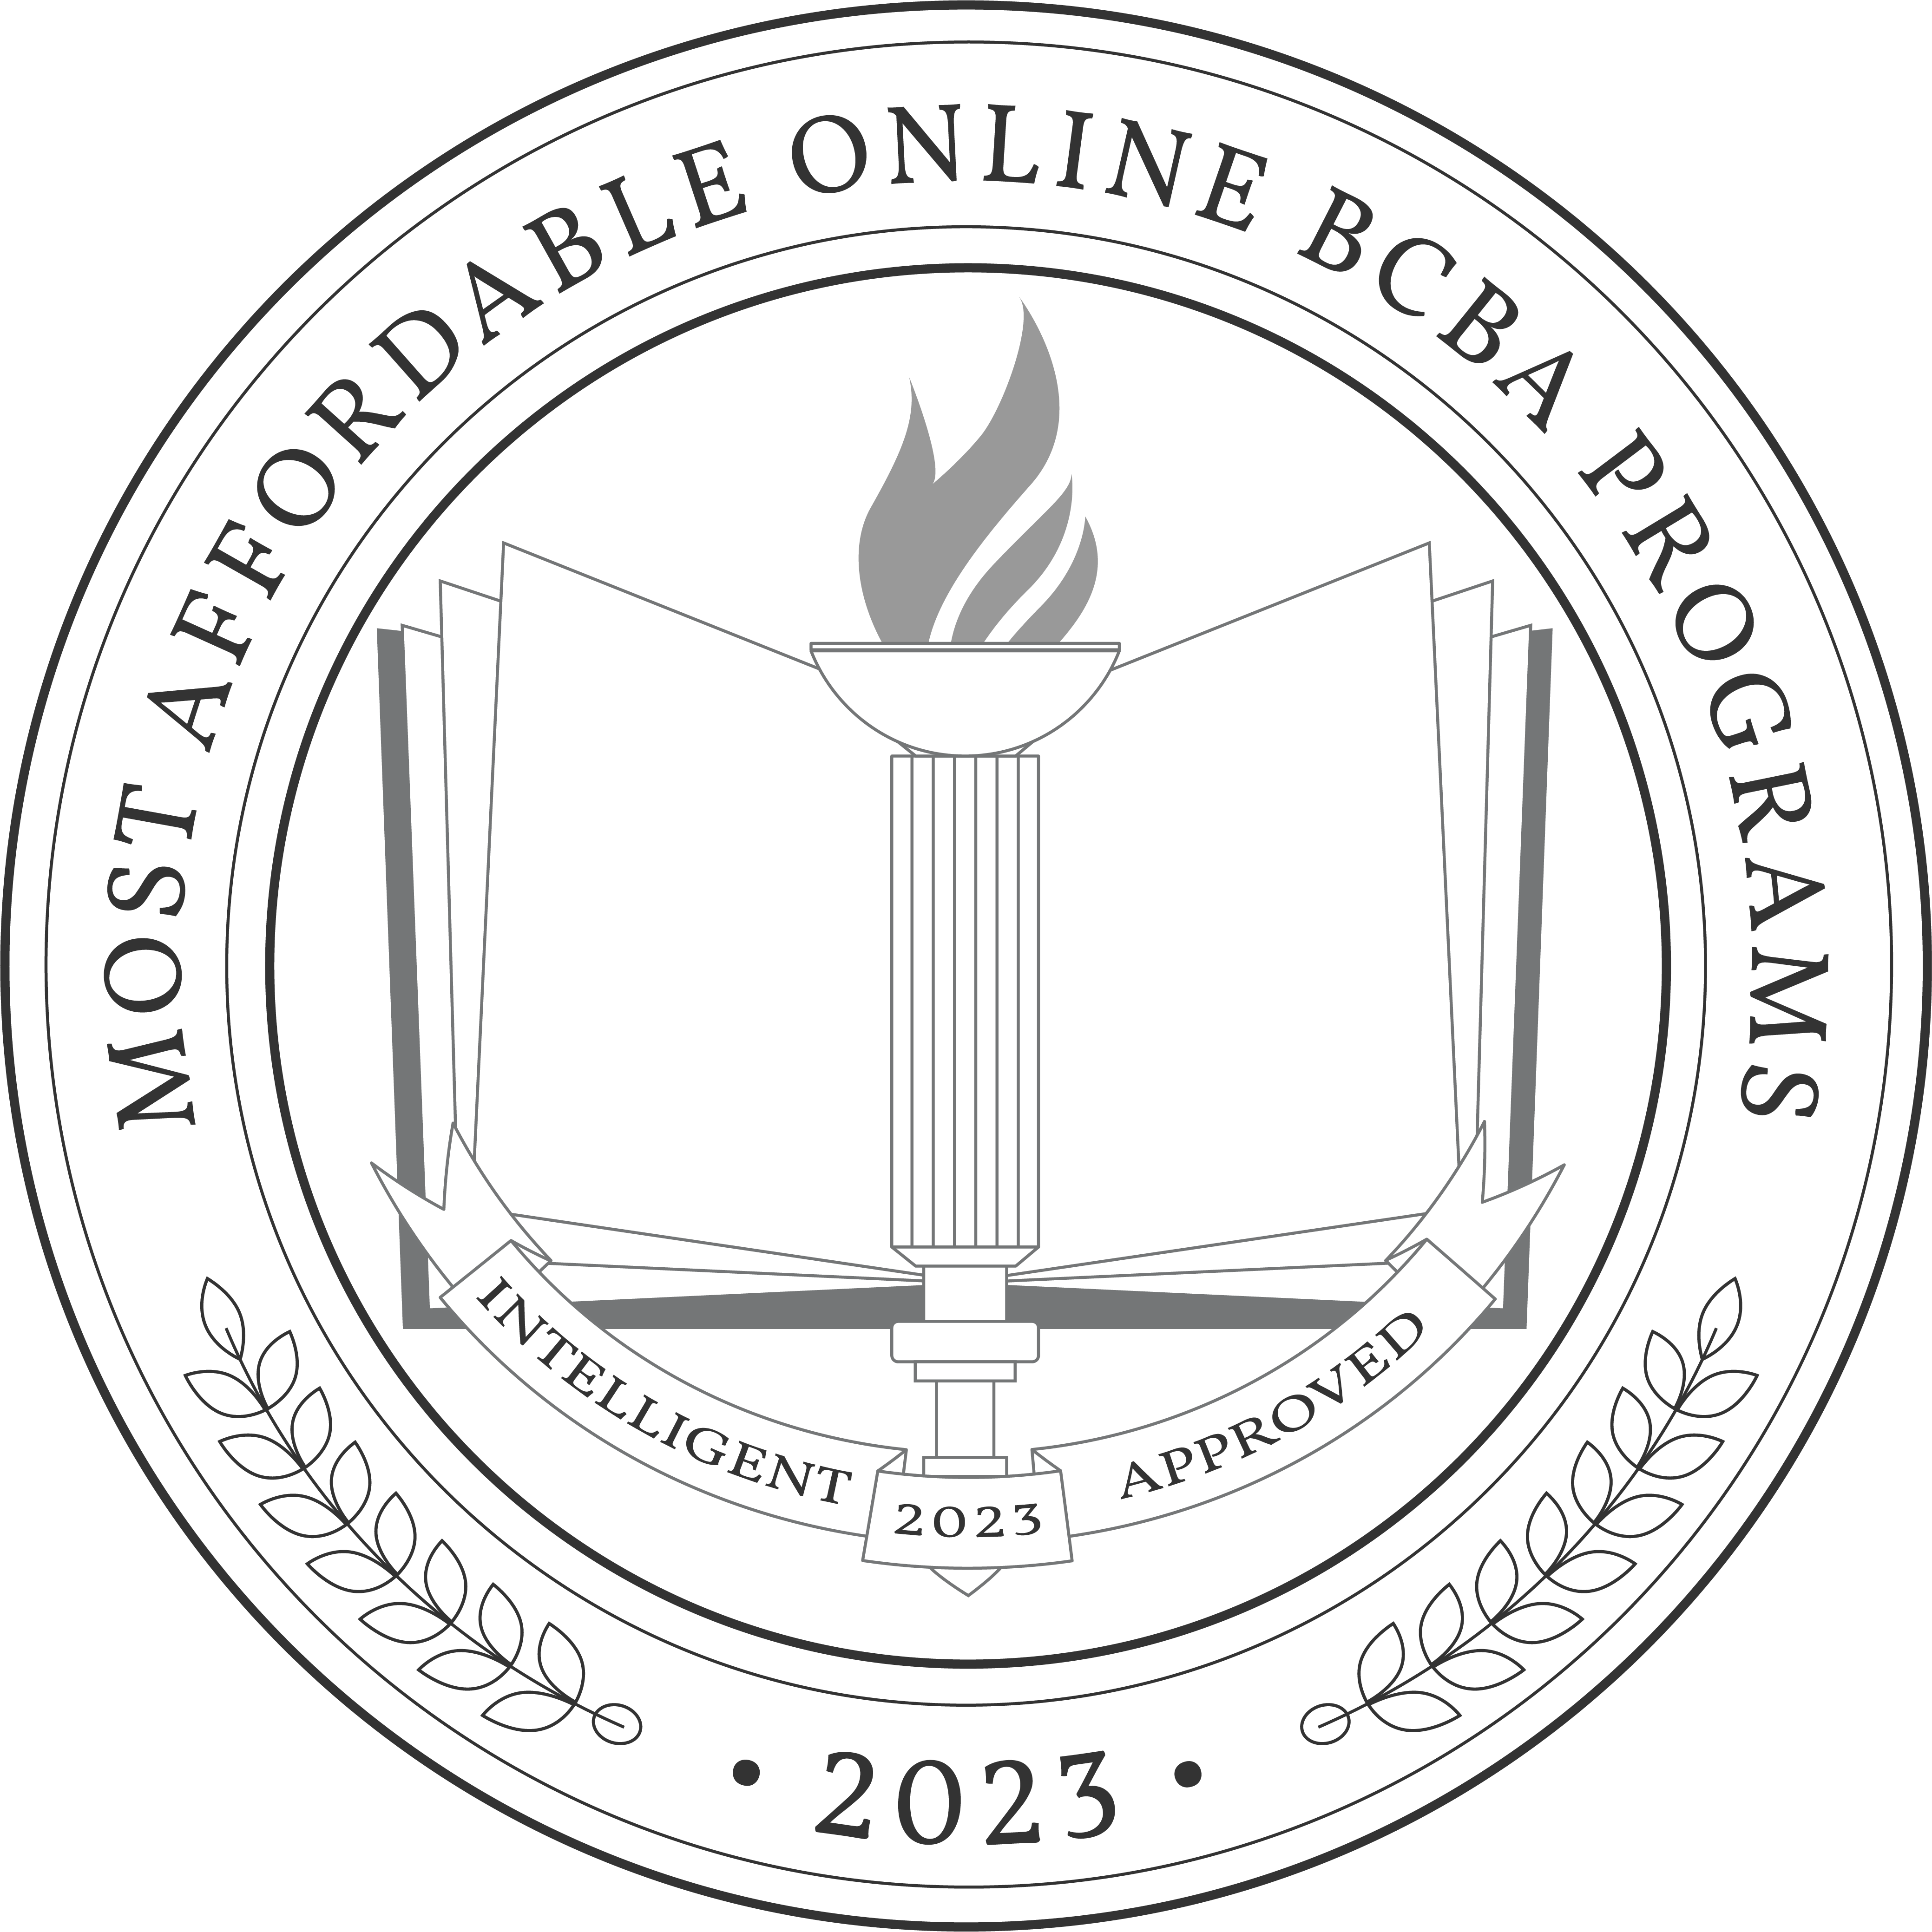 Most Affordable Online BCBA Programs badge